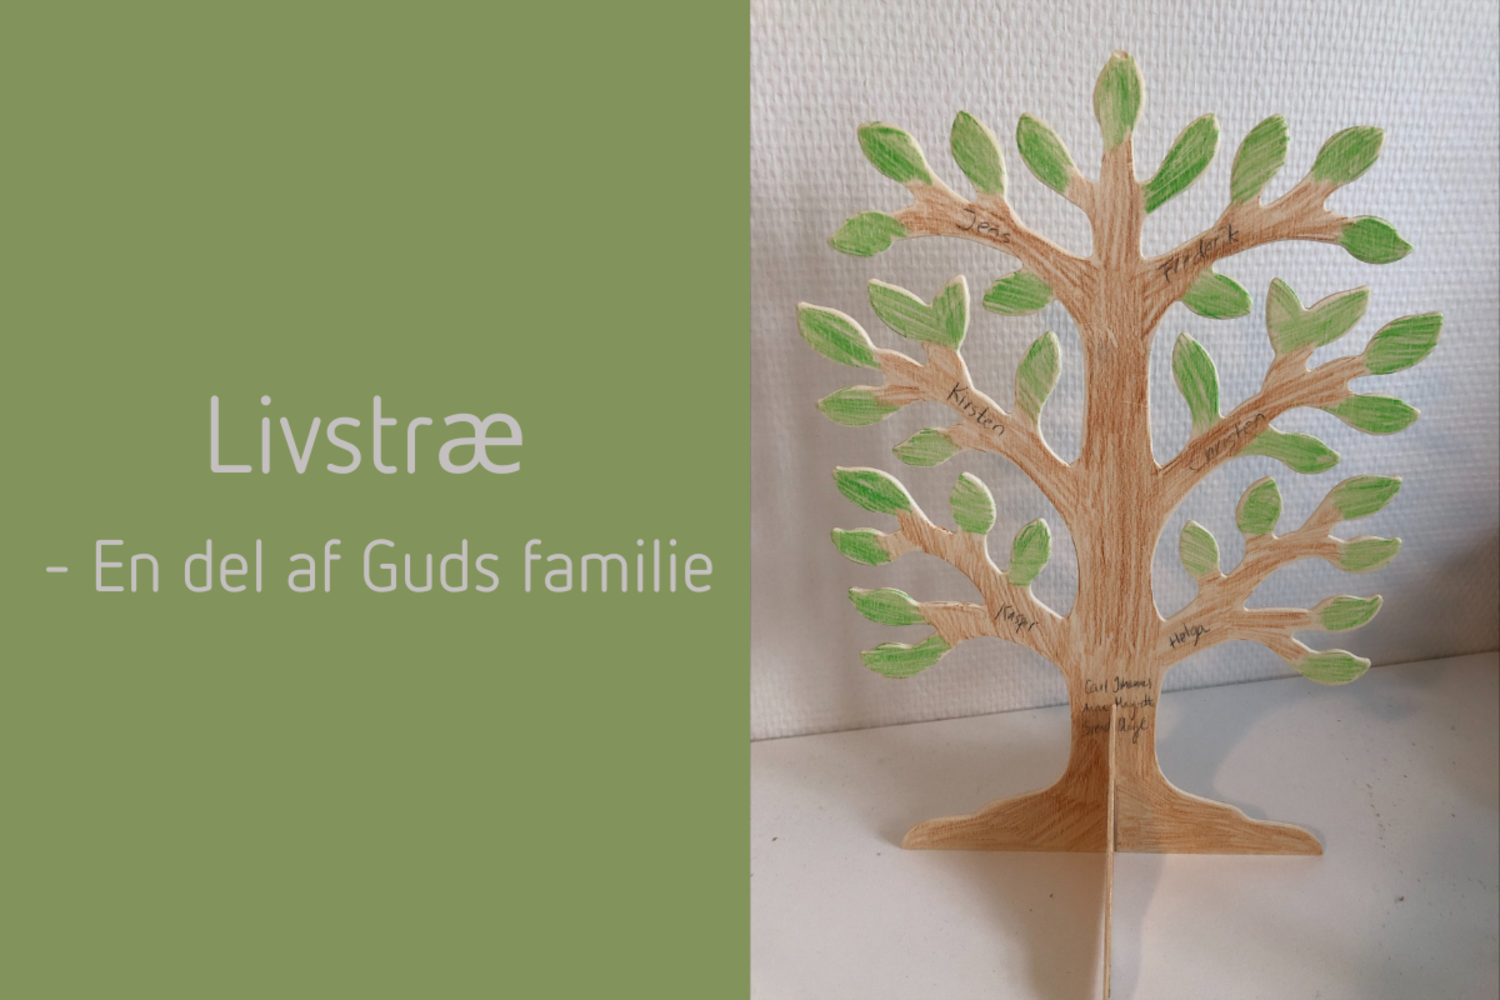 Livstræ - En del af Guds familie